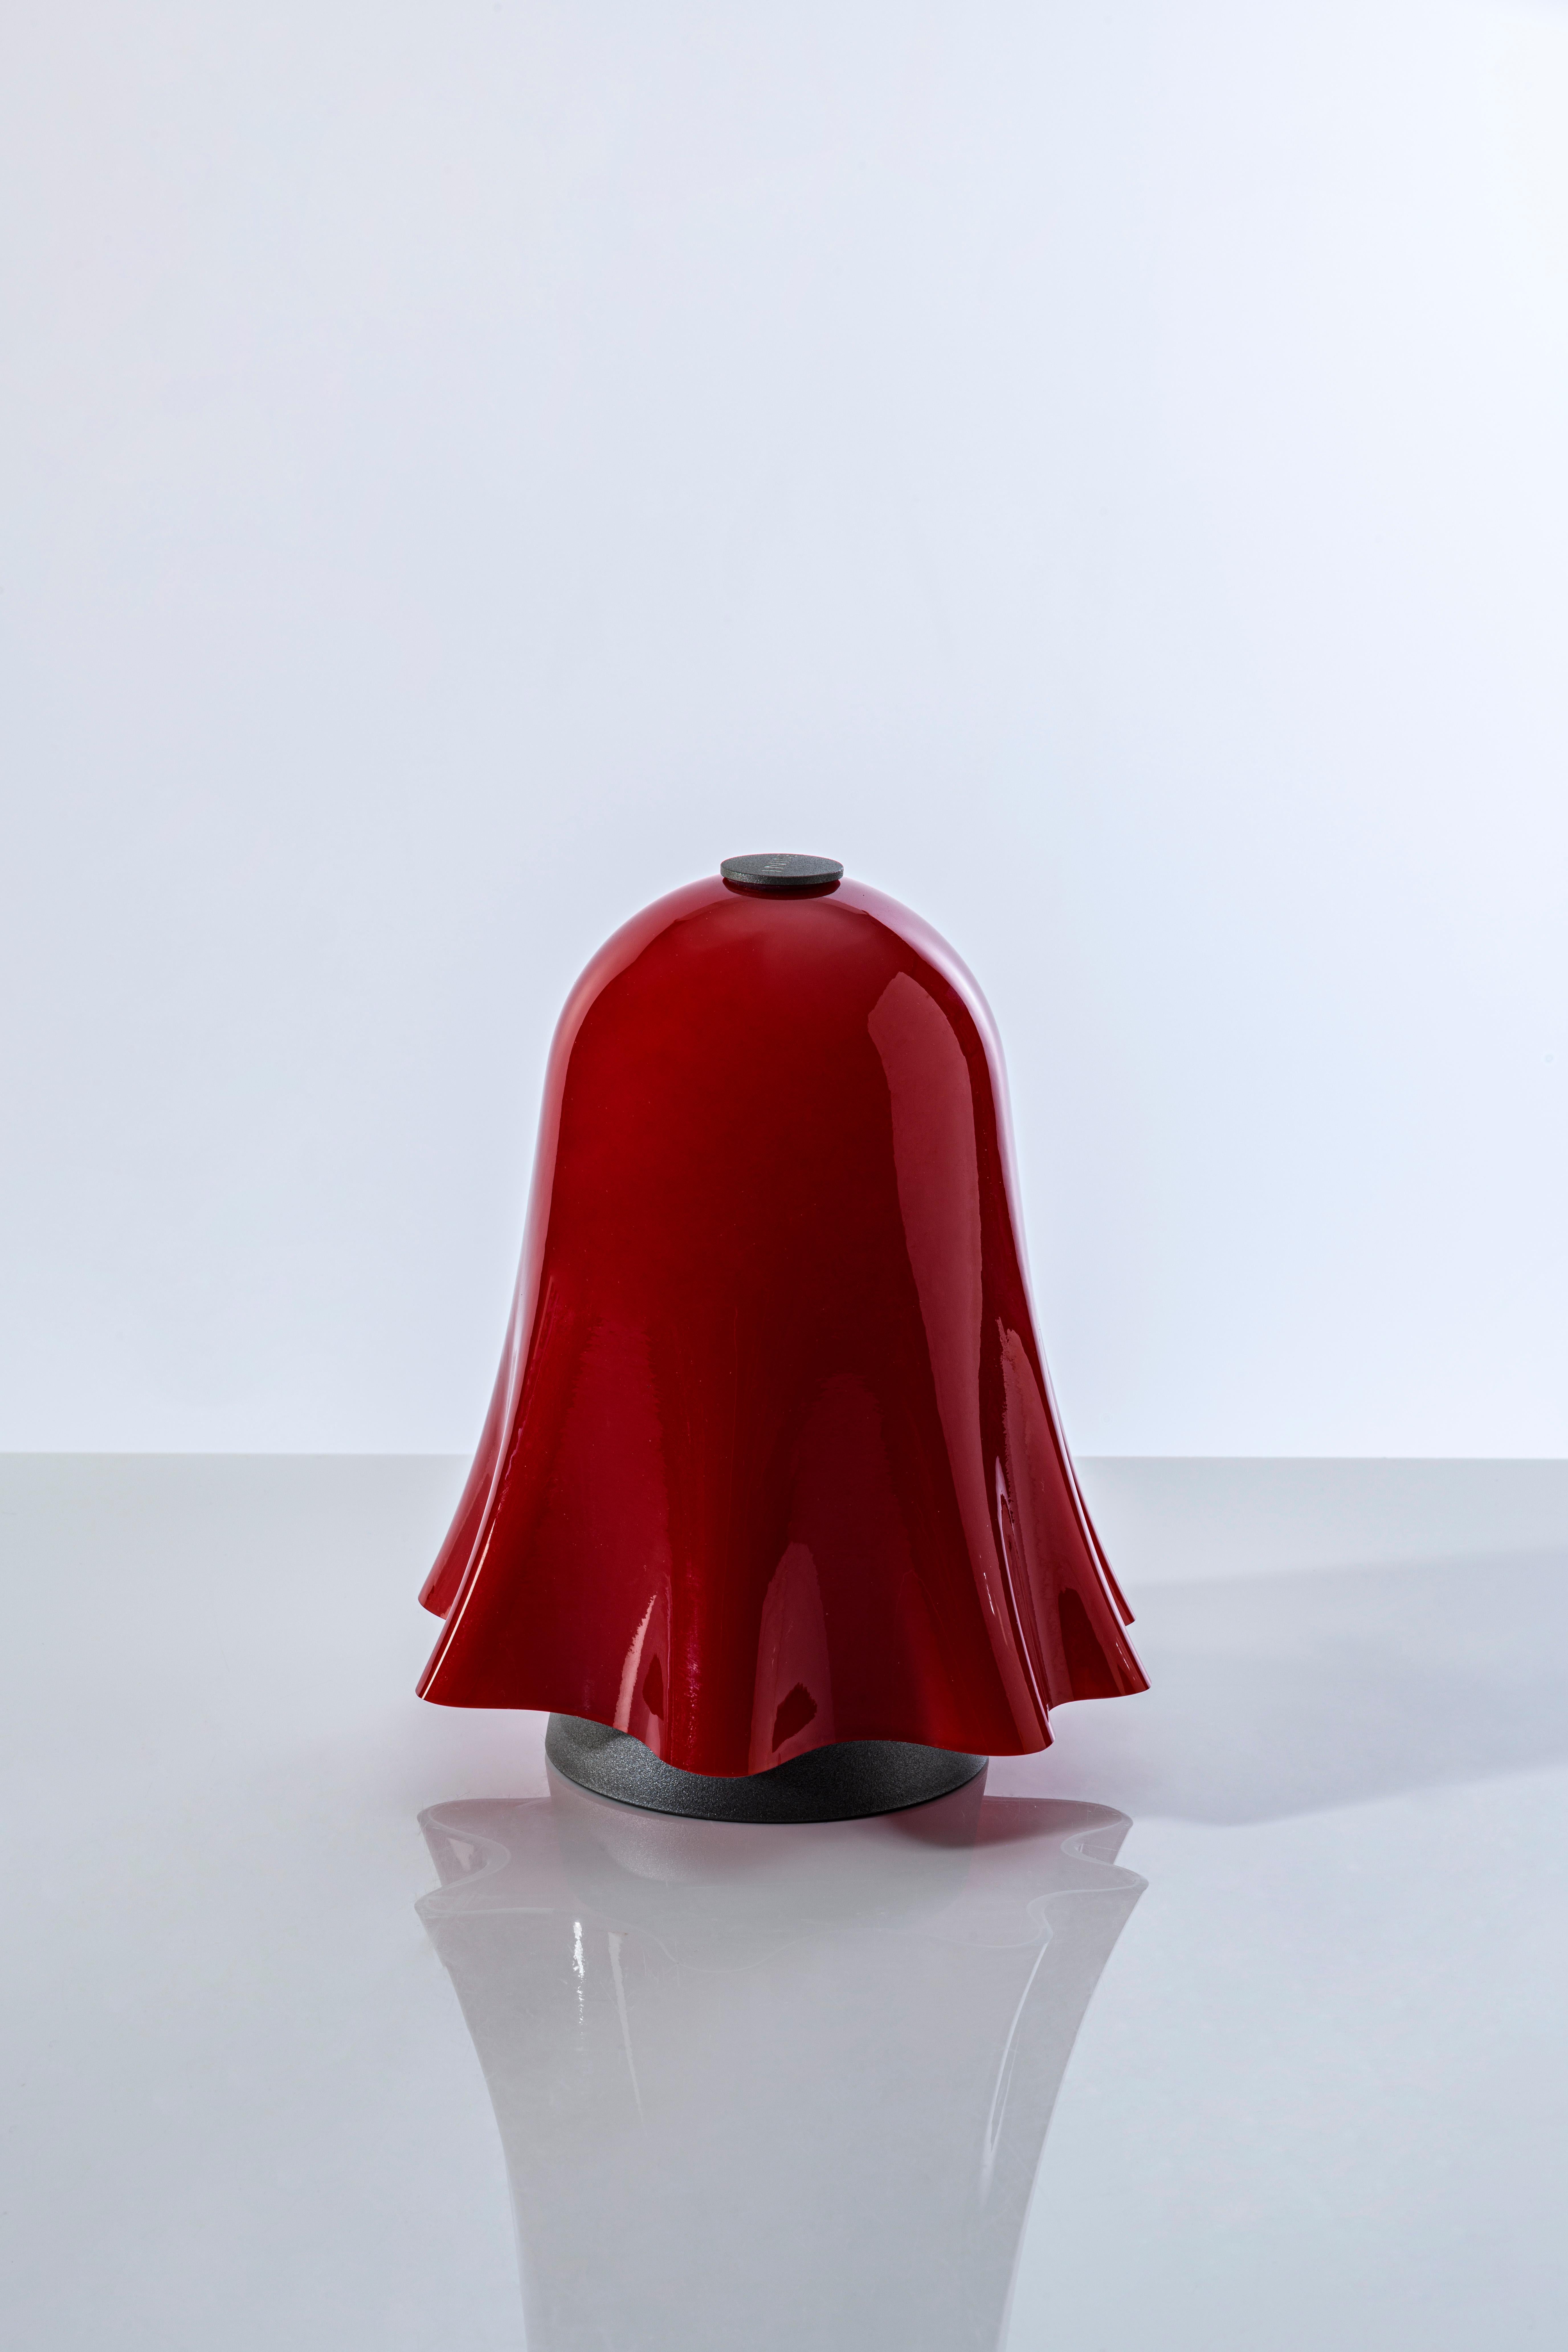 italien Lampe de bureau rouge rechargeable Fantasmino du 21e siècle, à gradation, touch table en vente